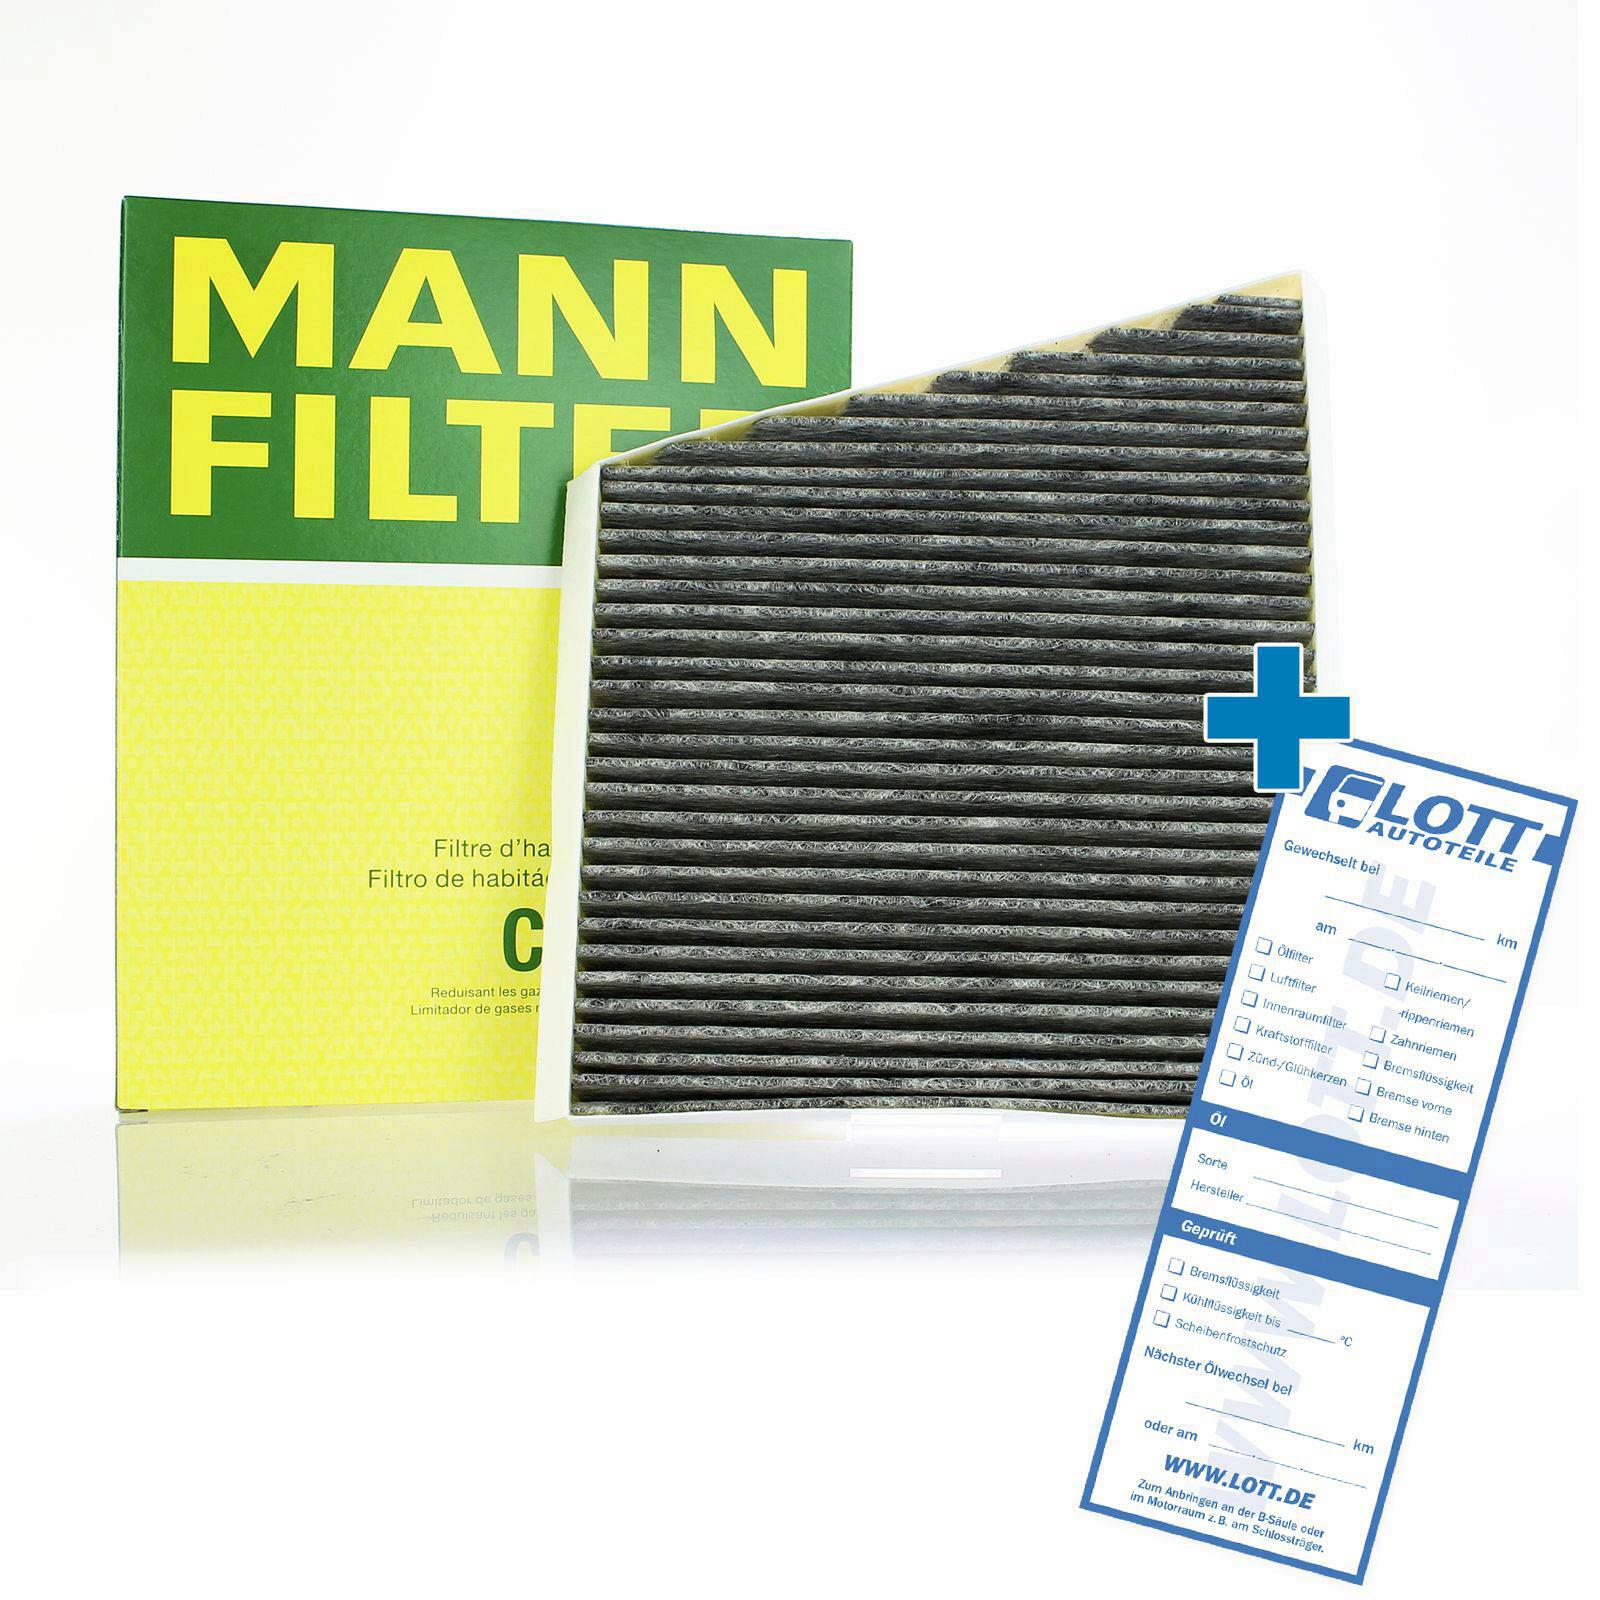 MANN-FILTER Innenraumfilter Filter Innenraumluft adsotop